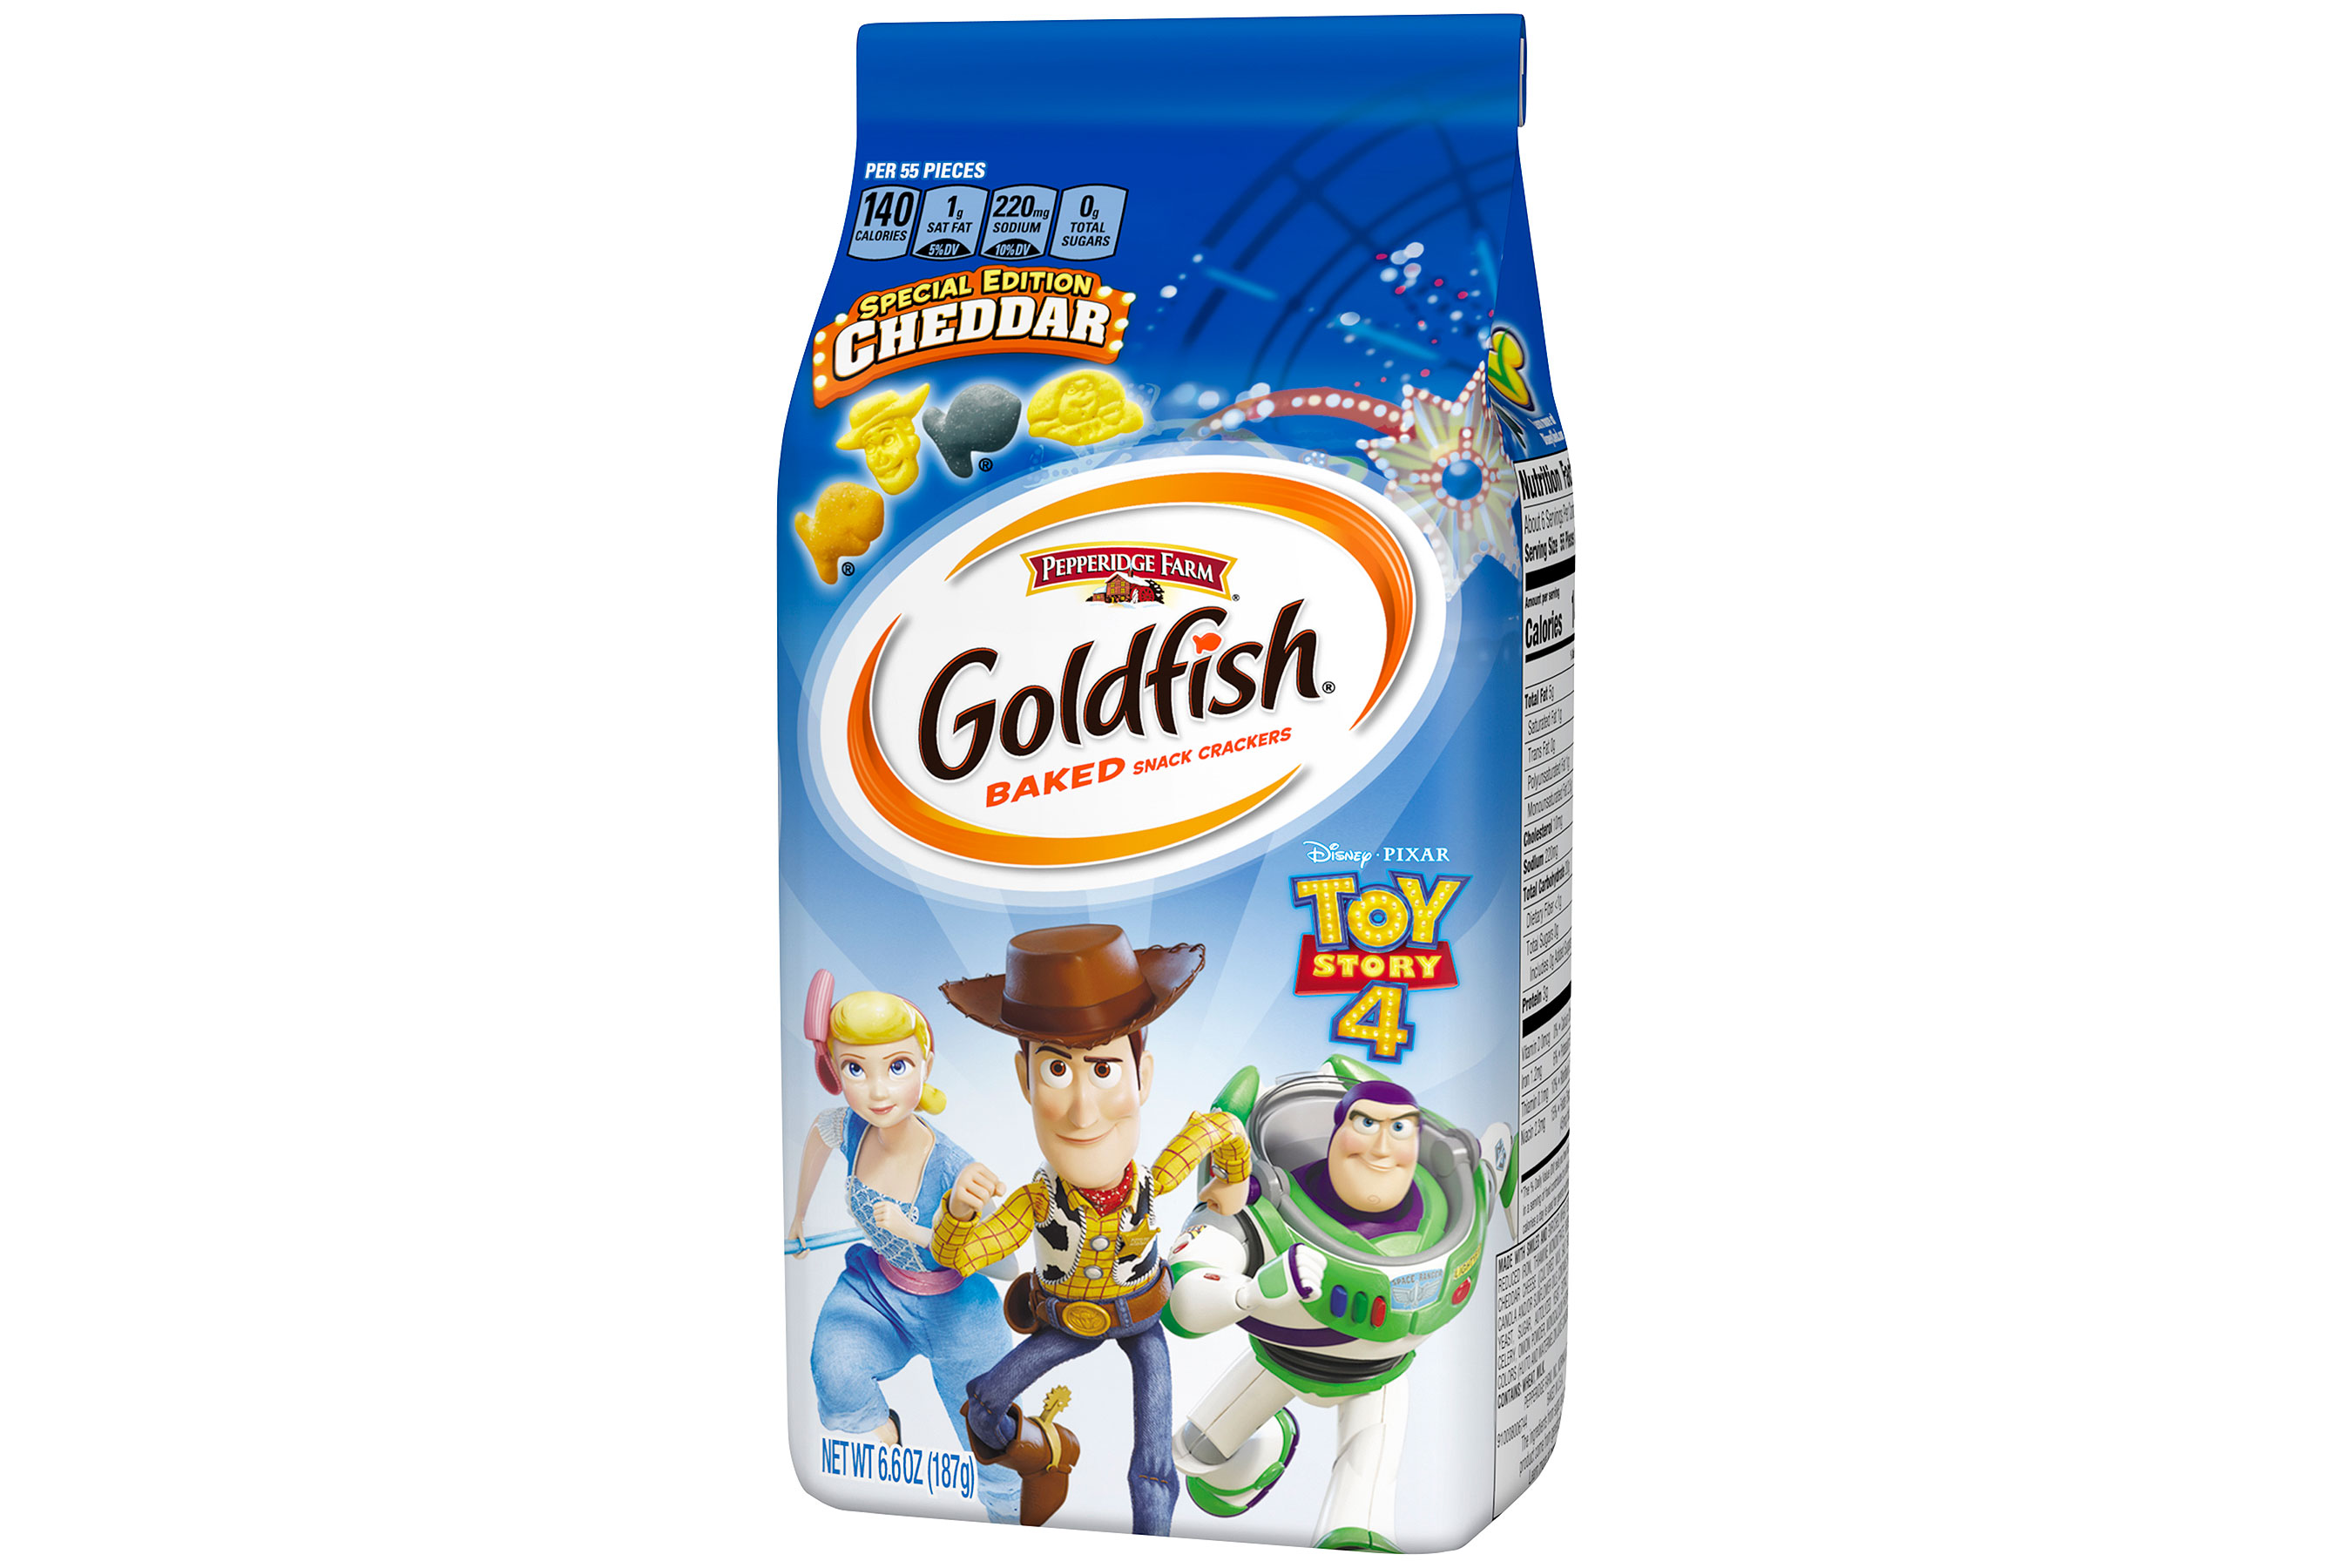 Toy Story 4 Goldfish